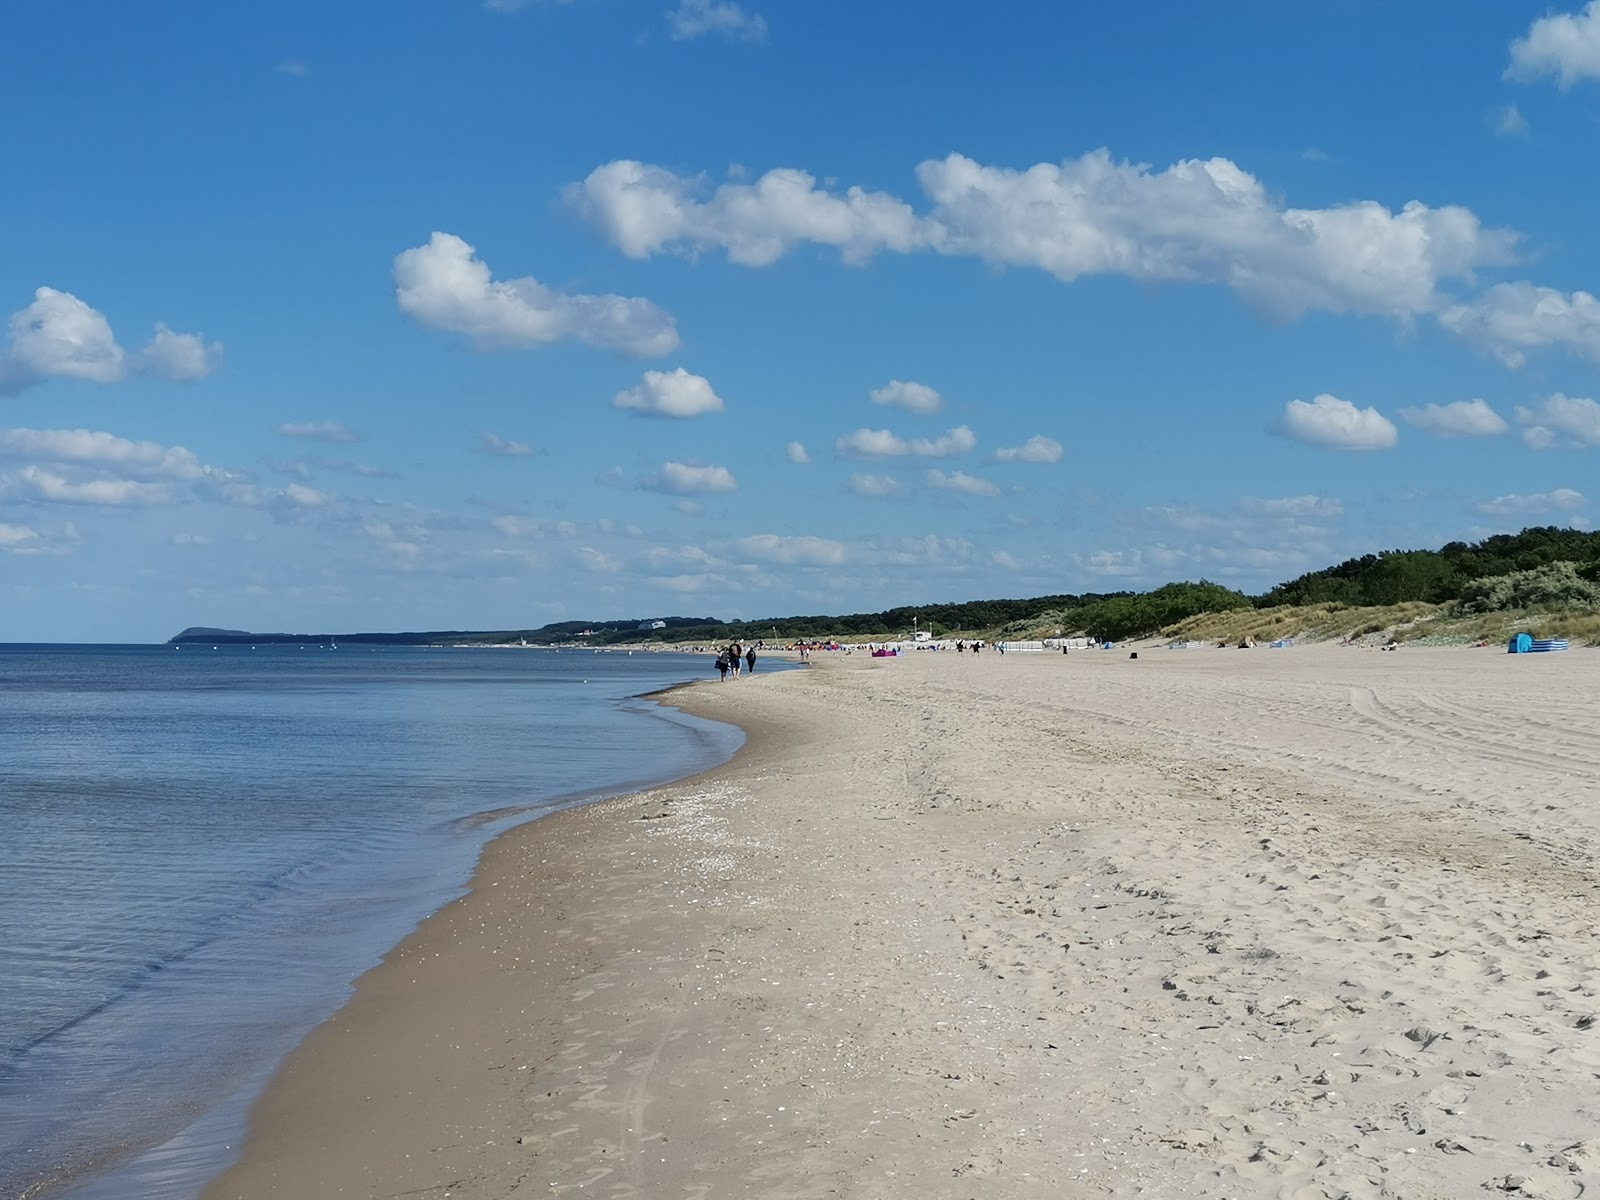 Fotografie cu Trassenheide strand cu o suprafață de nisip strălucitor